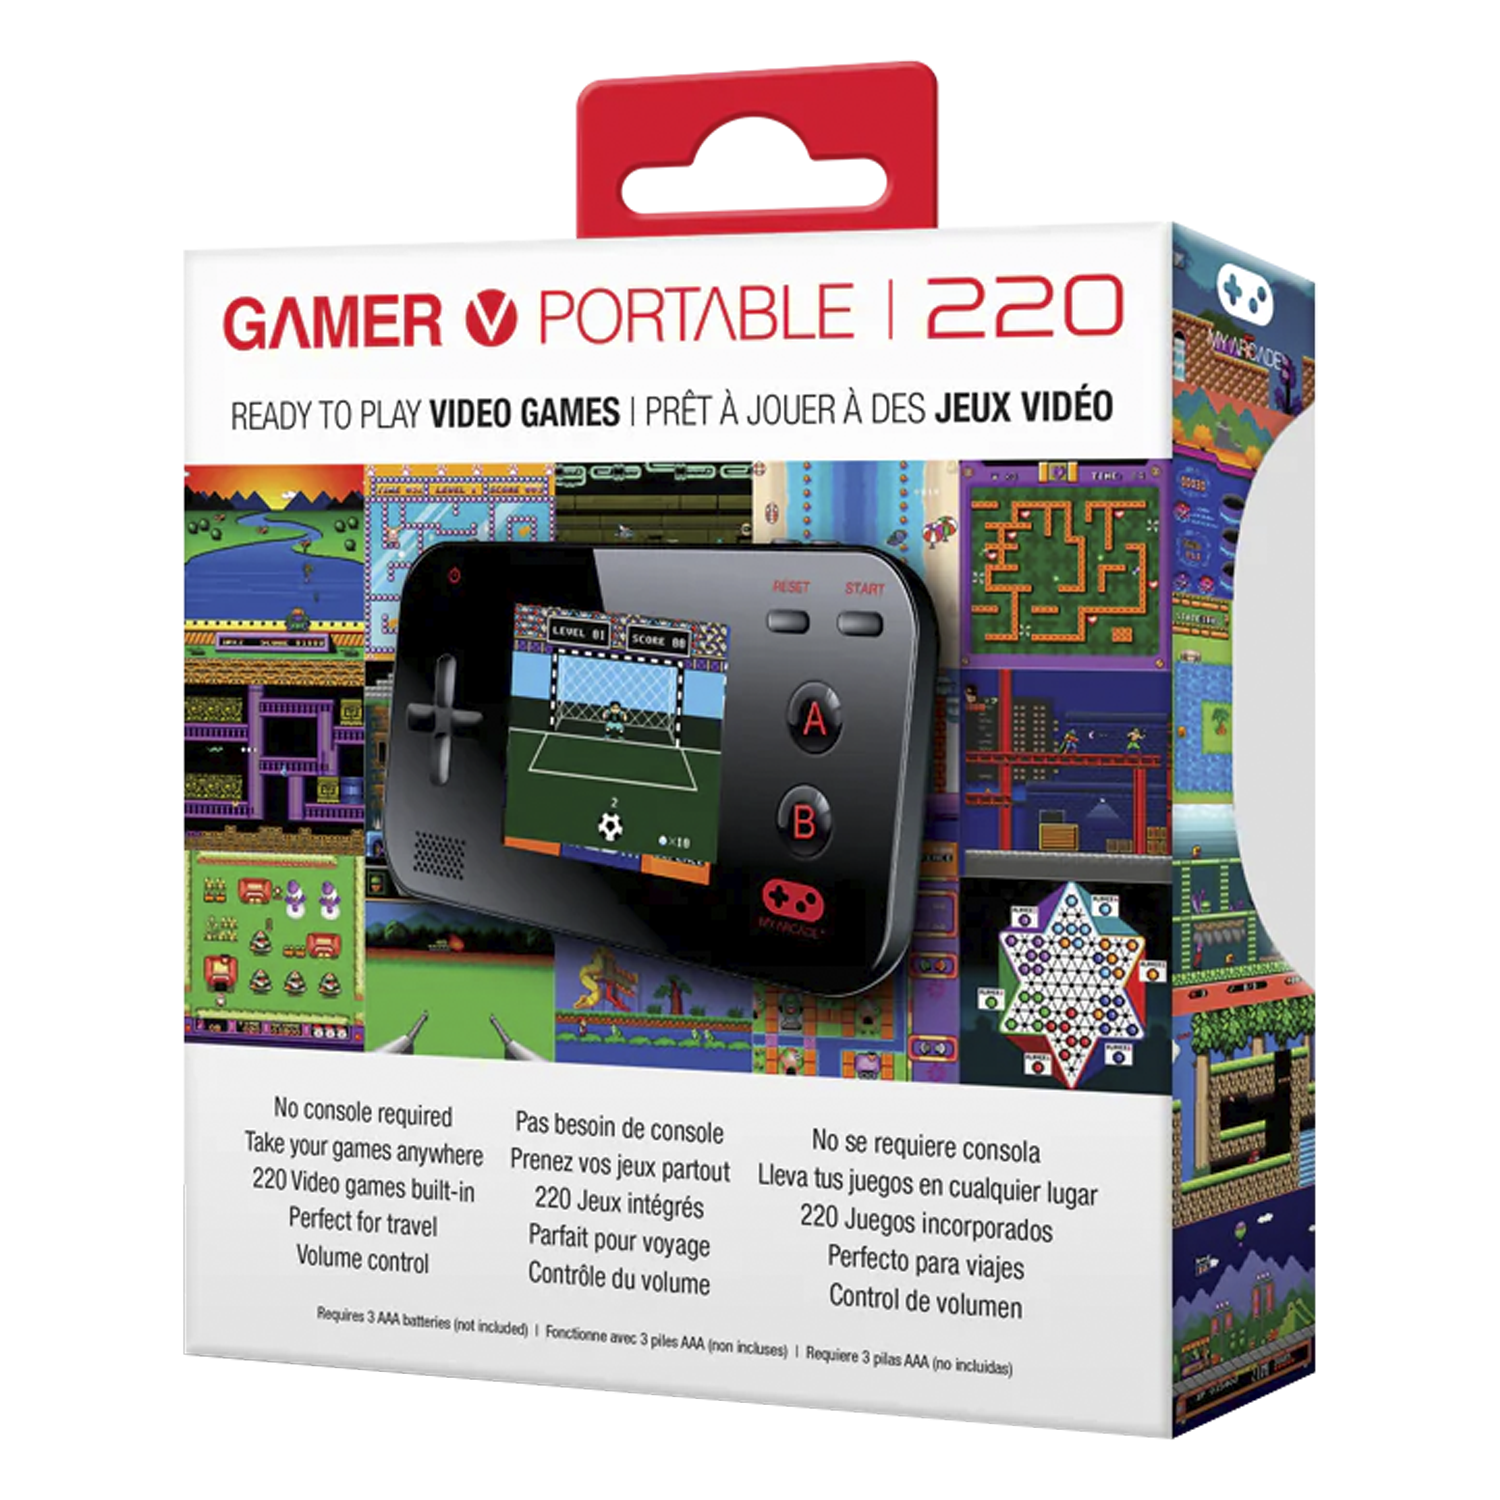 Console My Arcade Gamer V Portable - Preto (DGUN-2573)